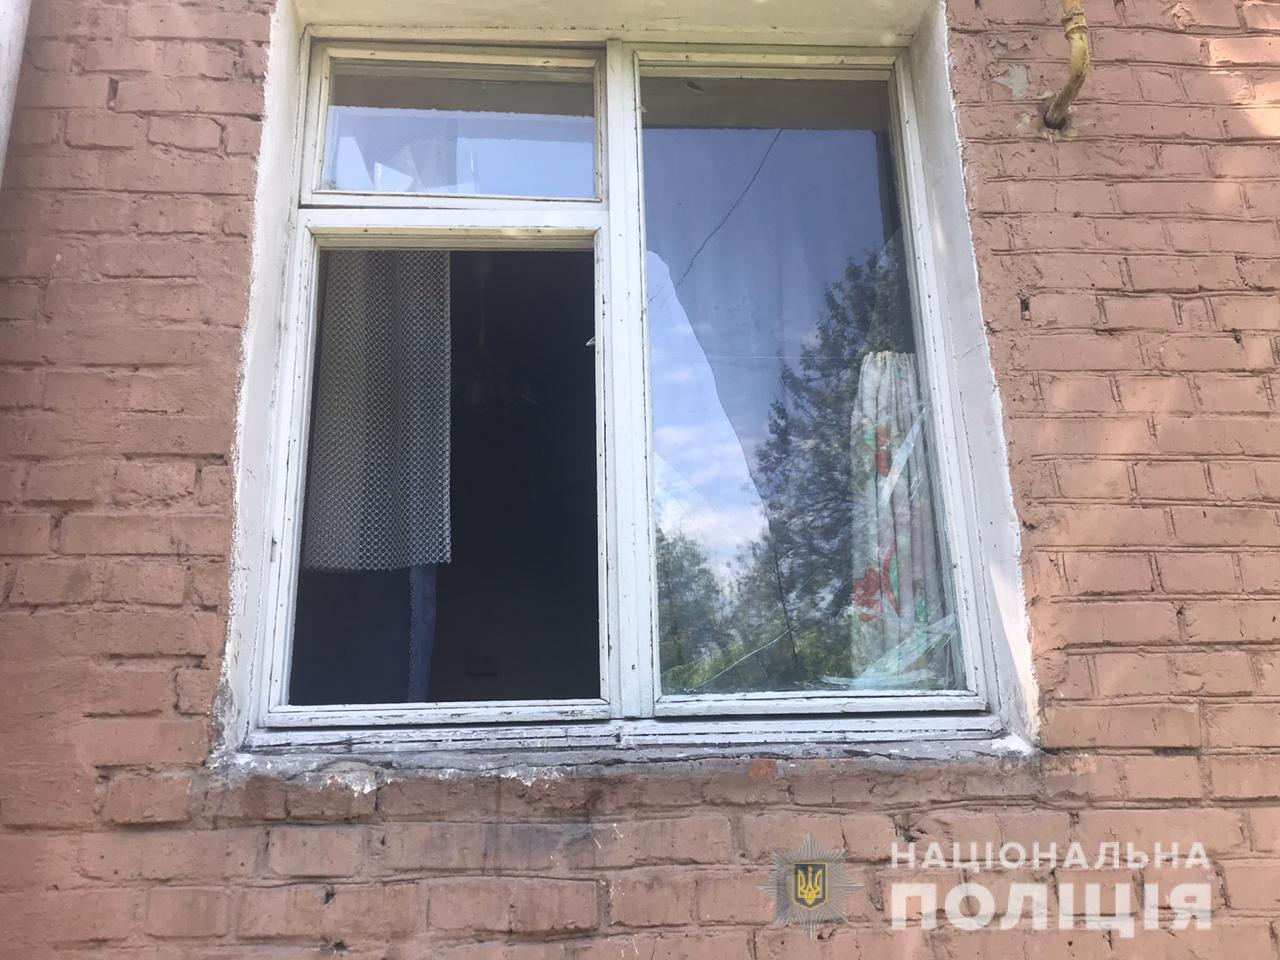 Викинув дитину у вікно: на Київщині суд виніс вирок чоловіку, який намагався вбити 5-річного пасинка. Фото і відео